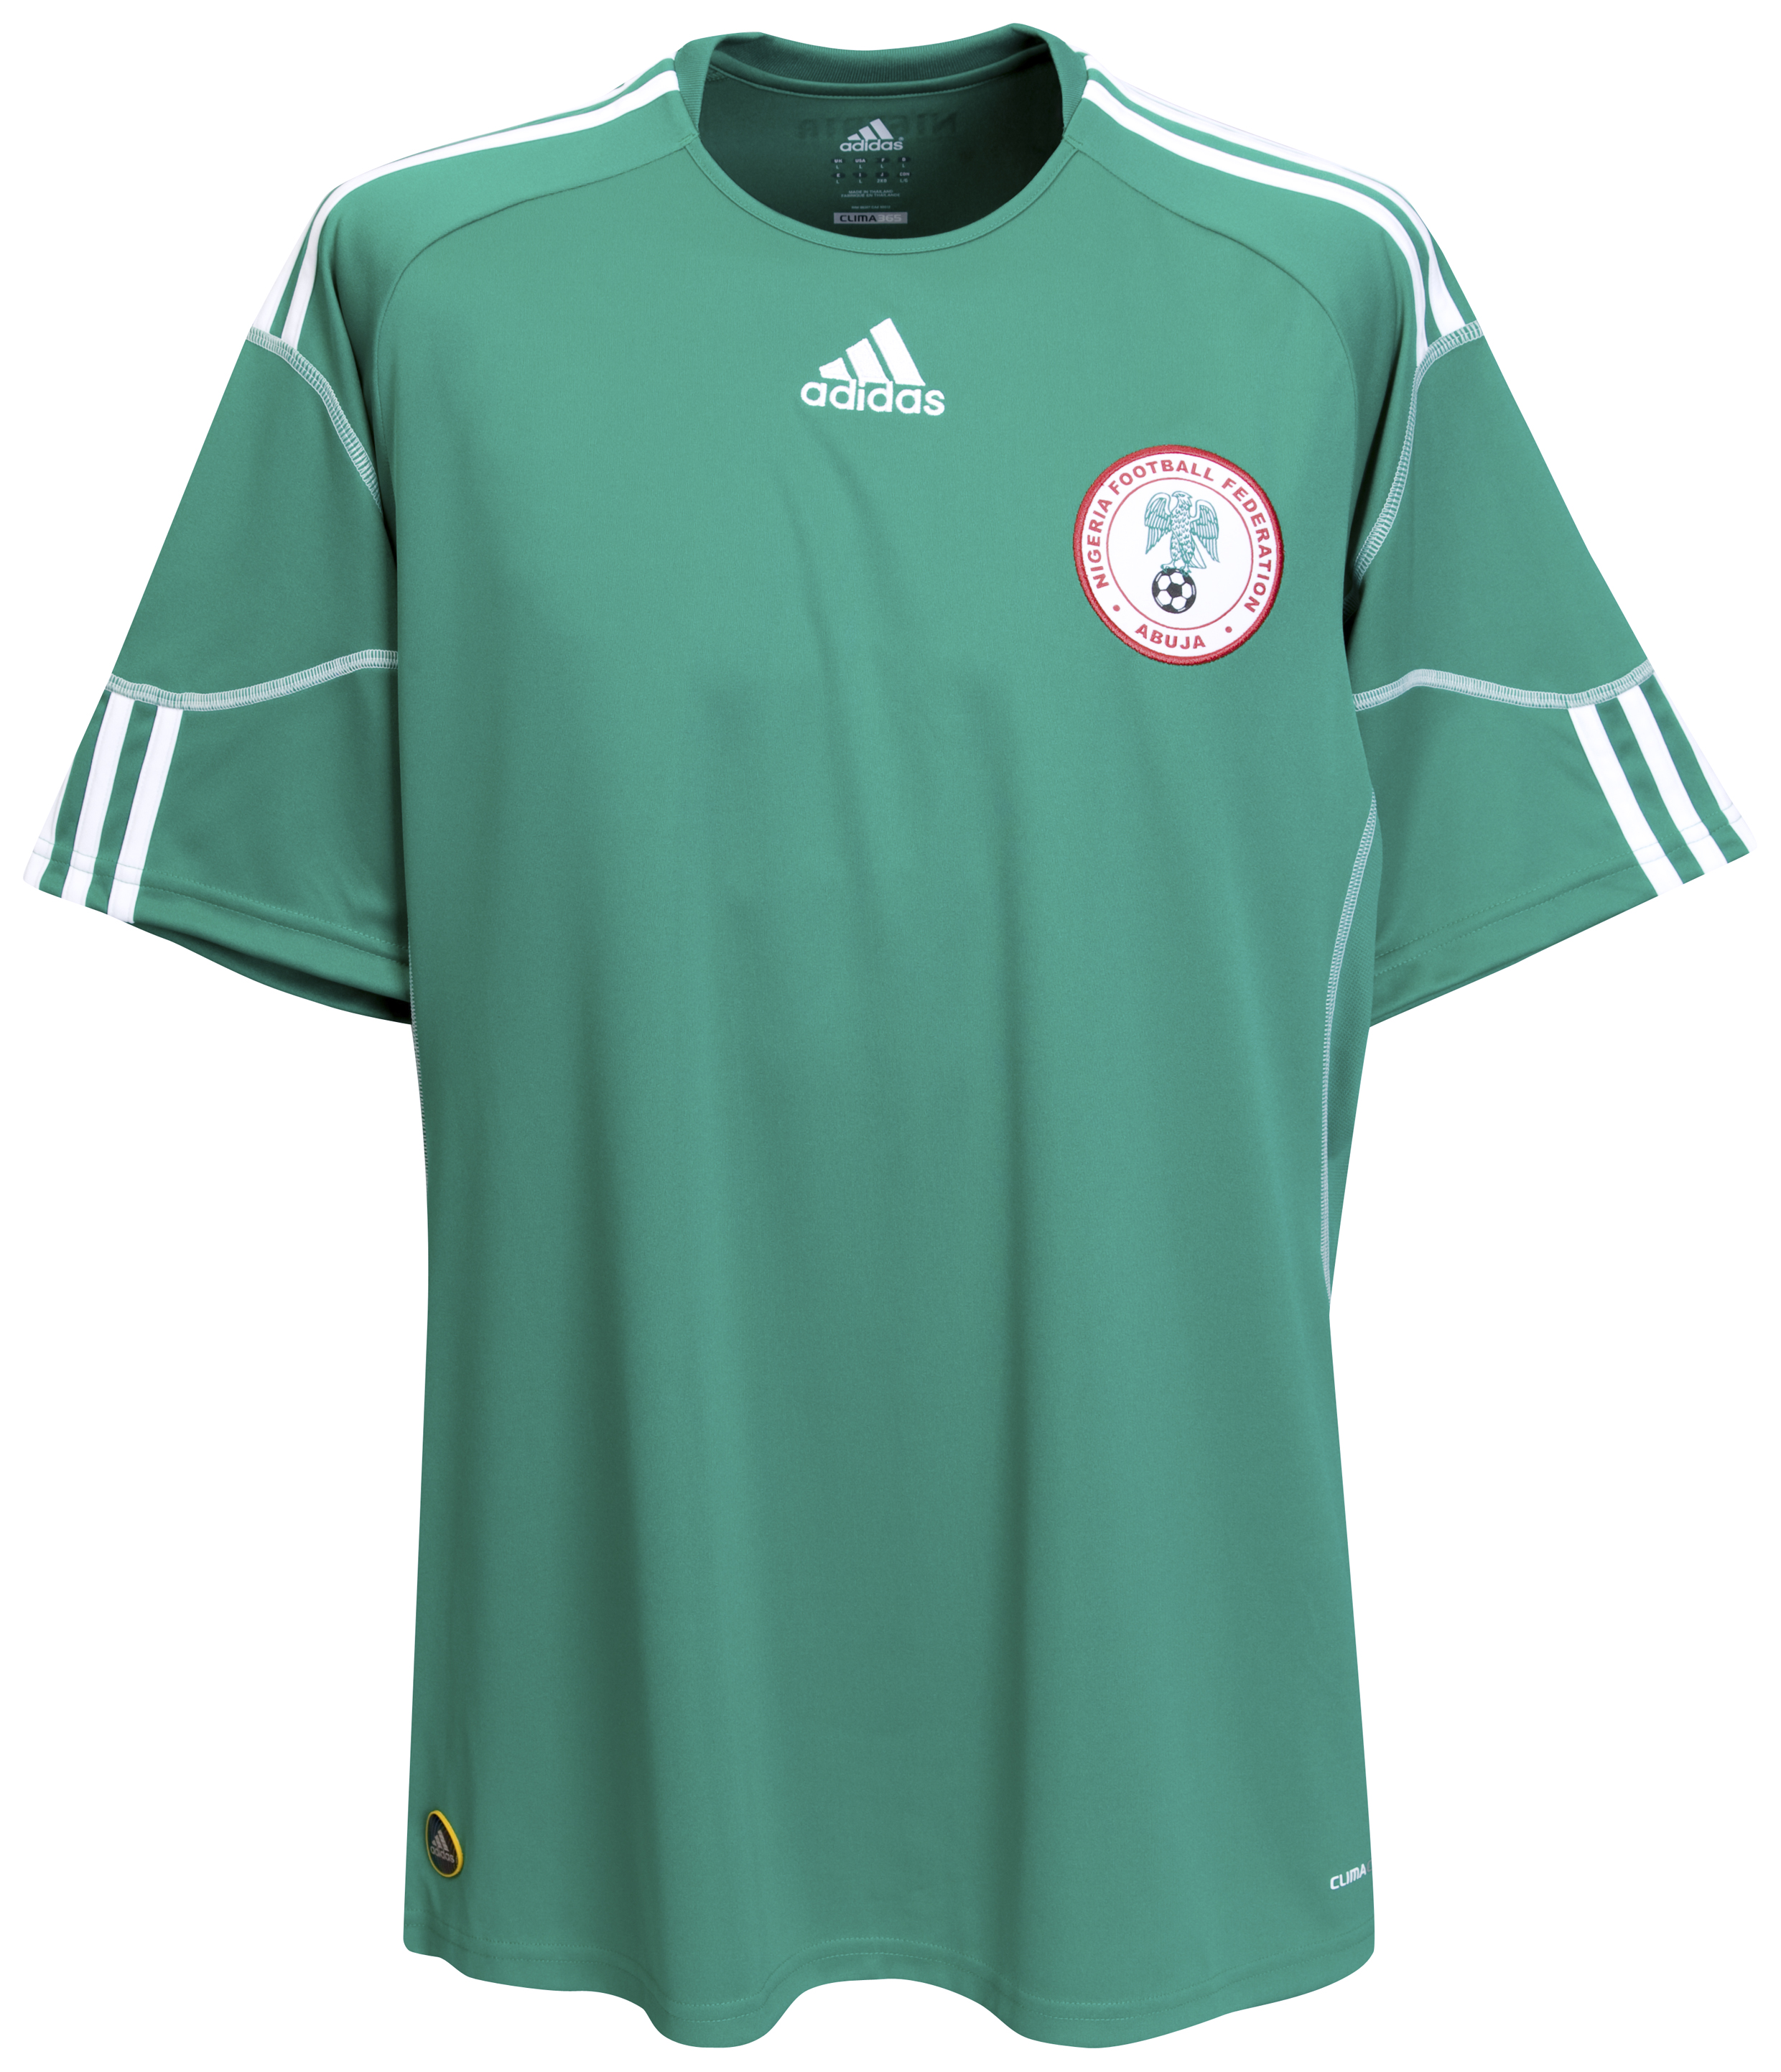 الملابس النهائيه لكأس العالم (2010)بجنوب افريقيا Kb-63746